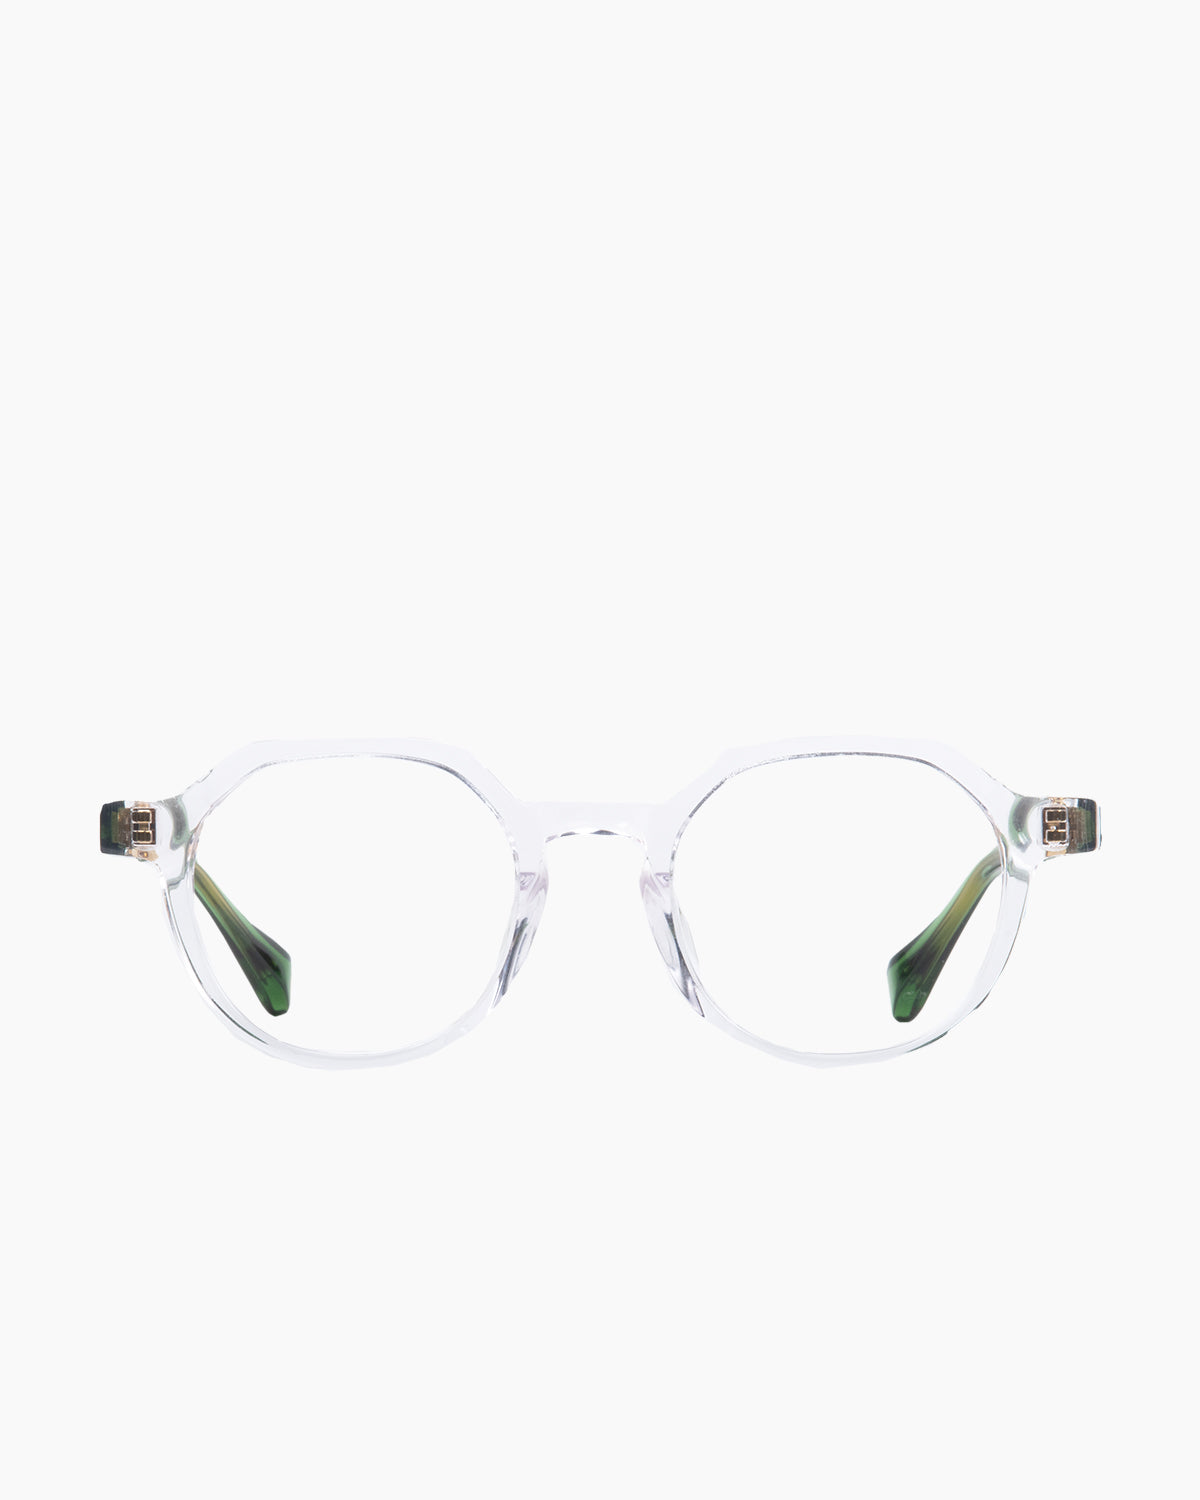 Francois Pinton - Haussmann9af - CG | Bar à lunettes